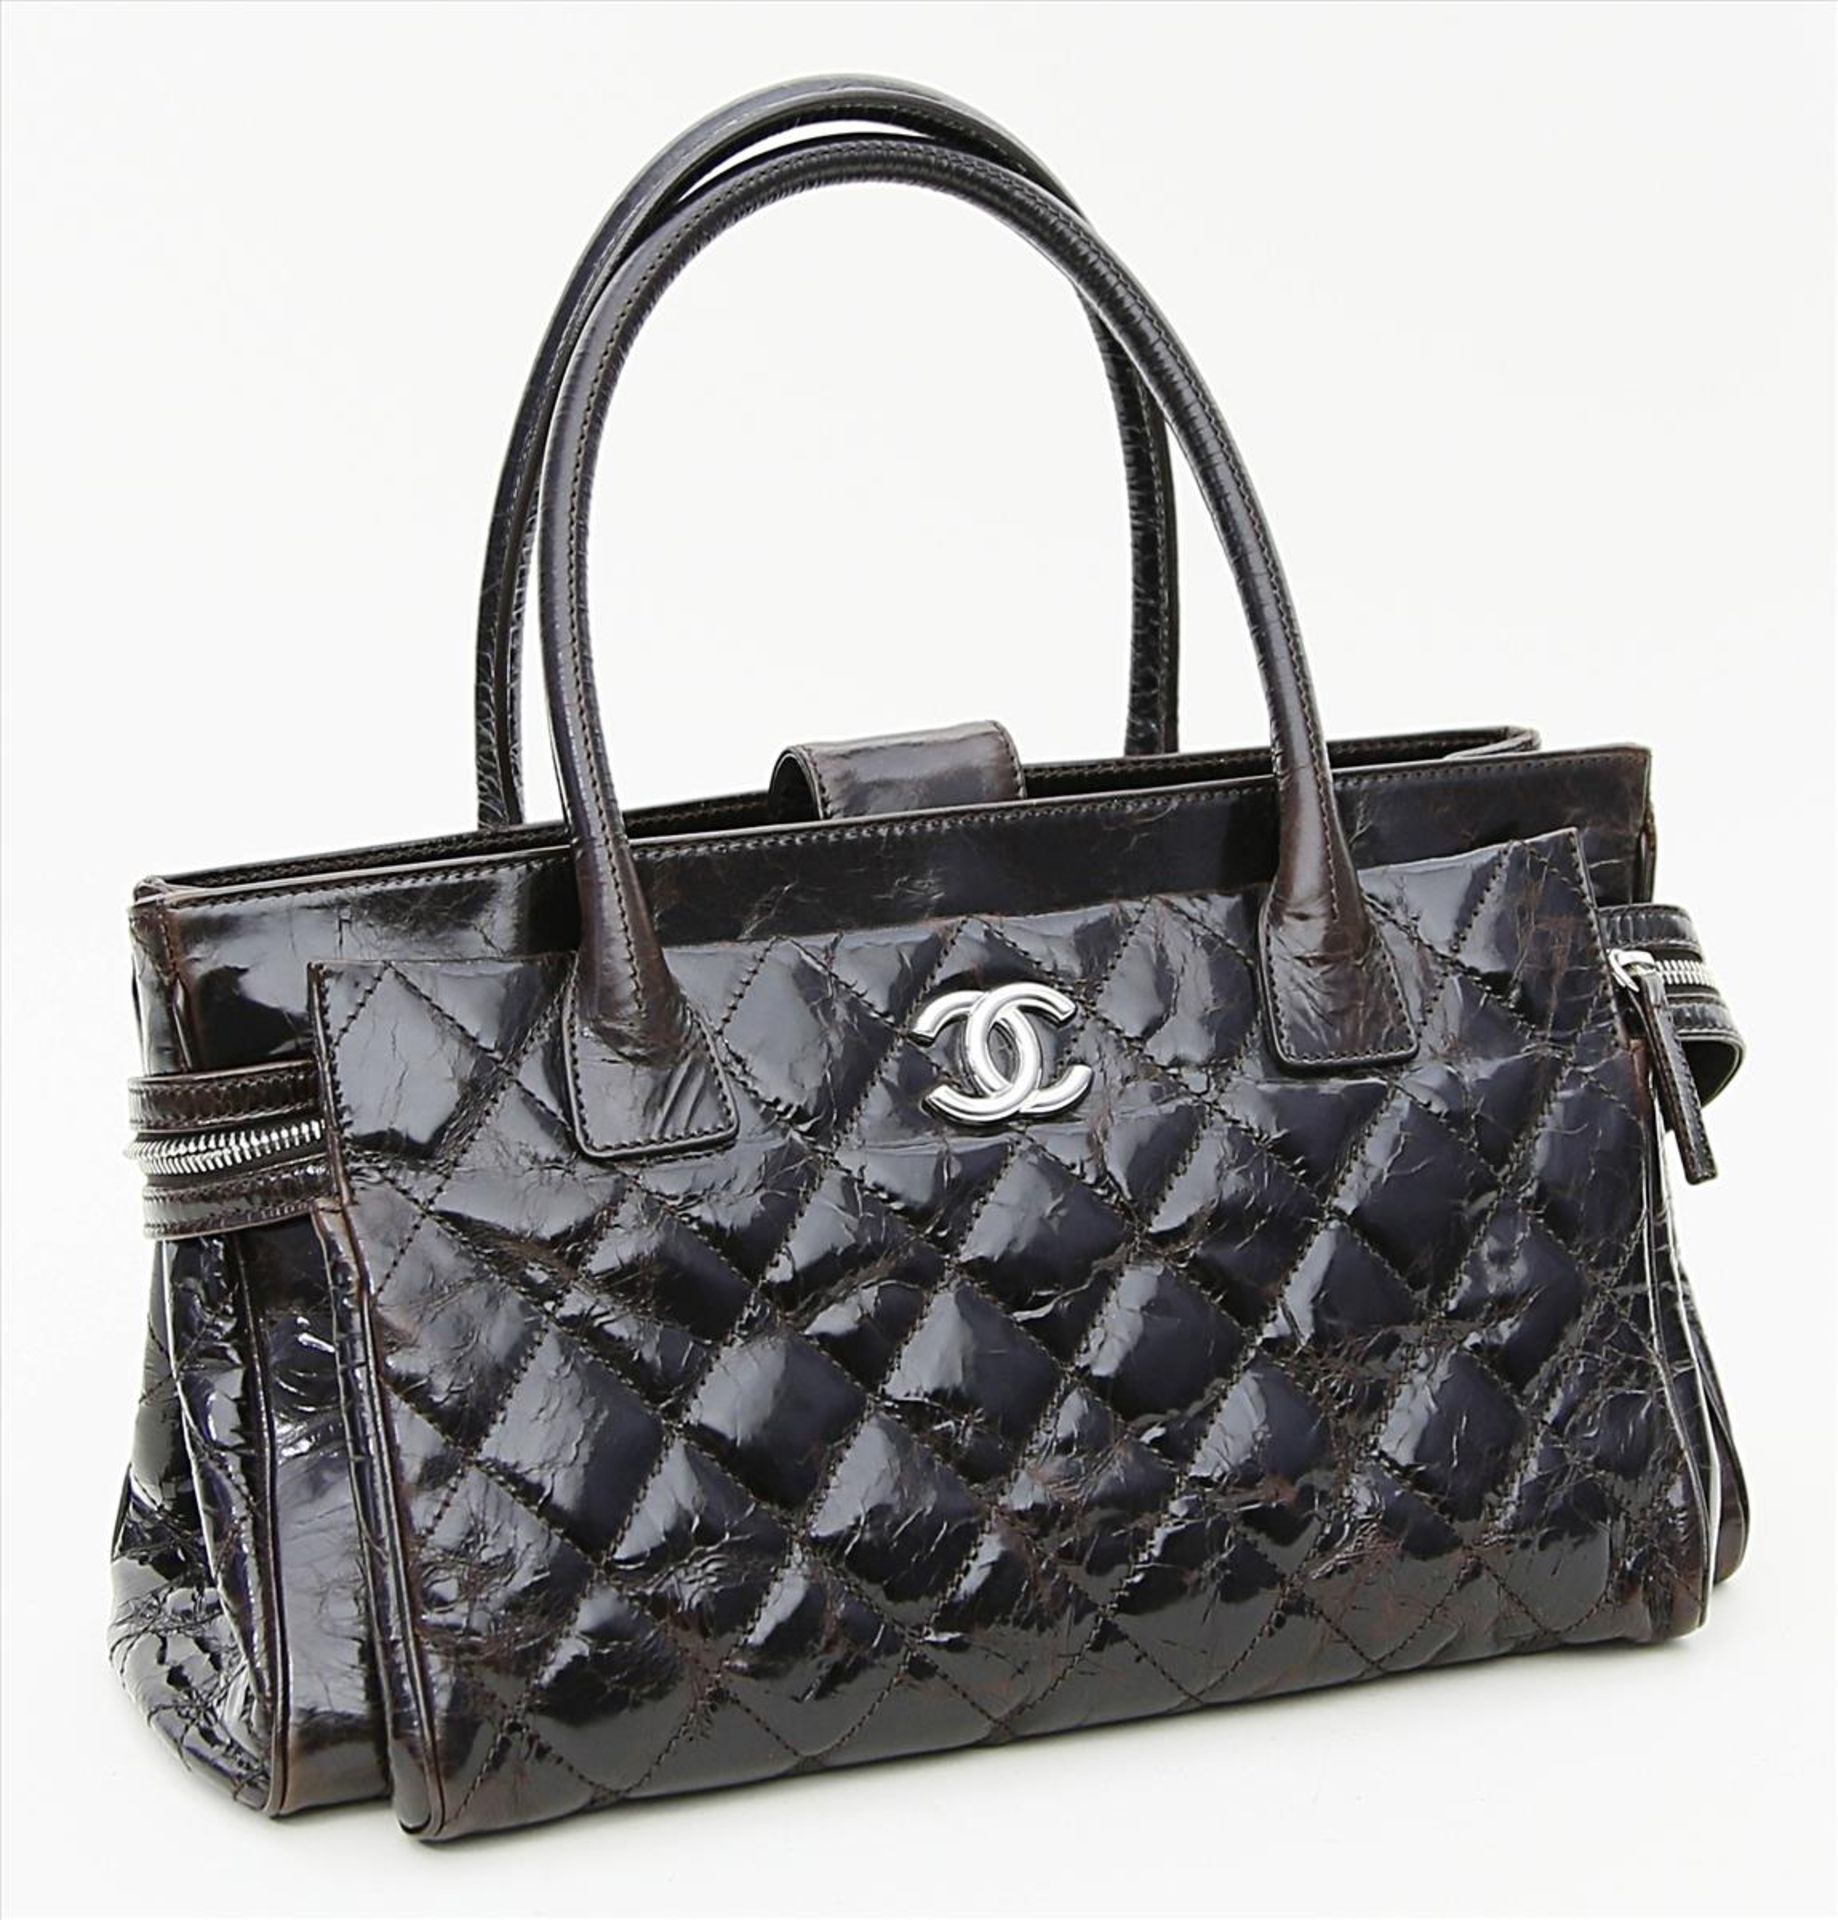 Tasche, Chanel.Braunes, gestepptes Glanzleder. Versilberte Hardware, inkl. CC-Logo. Großer